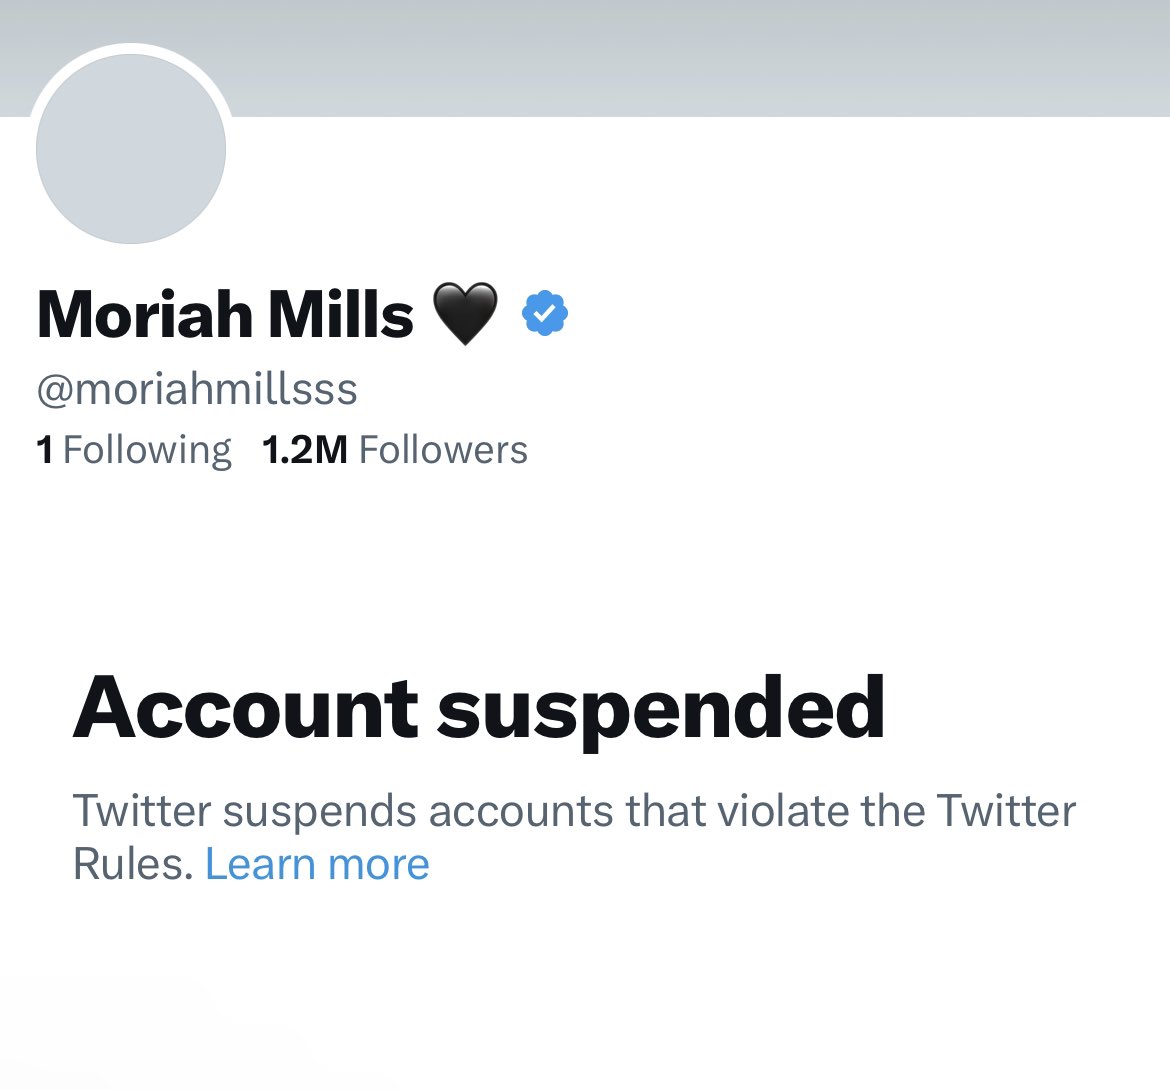 Moriah Mills Twitter account has been suspended: